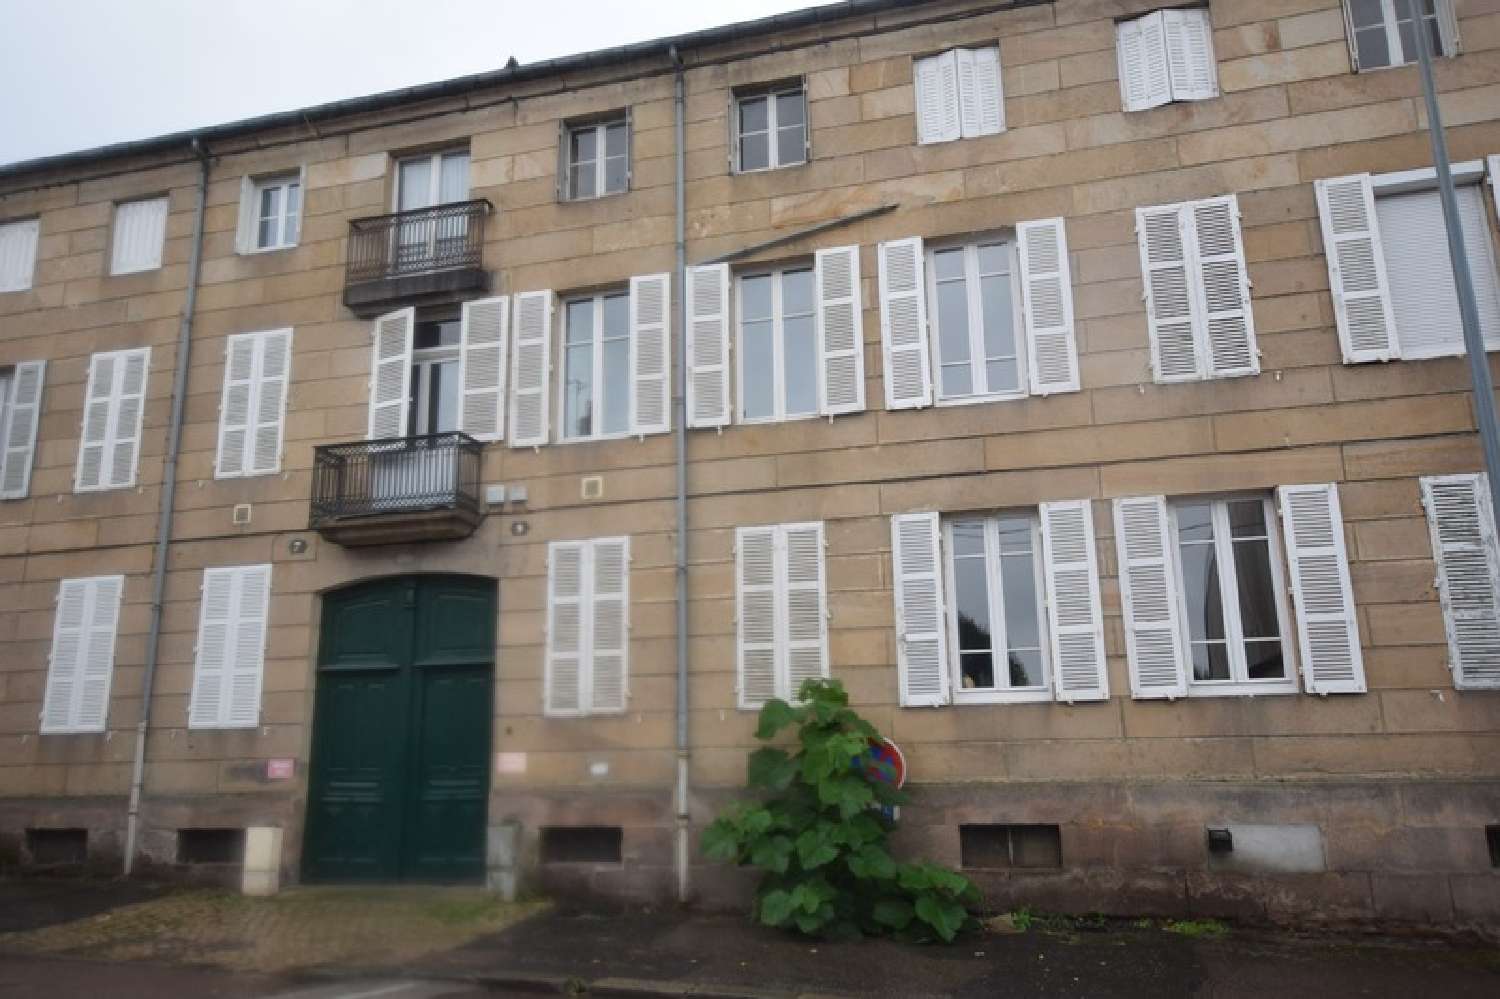  à vendre appartement Autun Saône-et-Loire 2